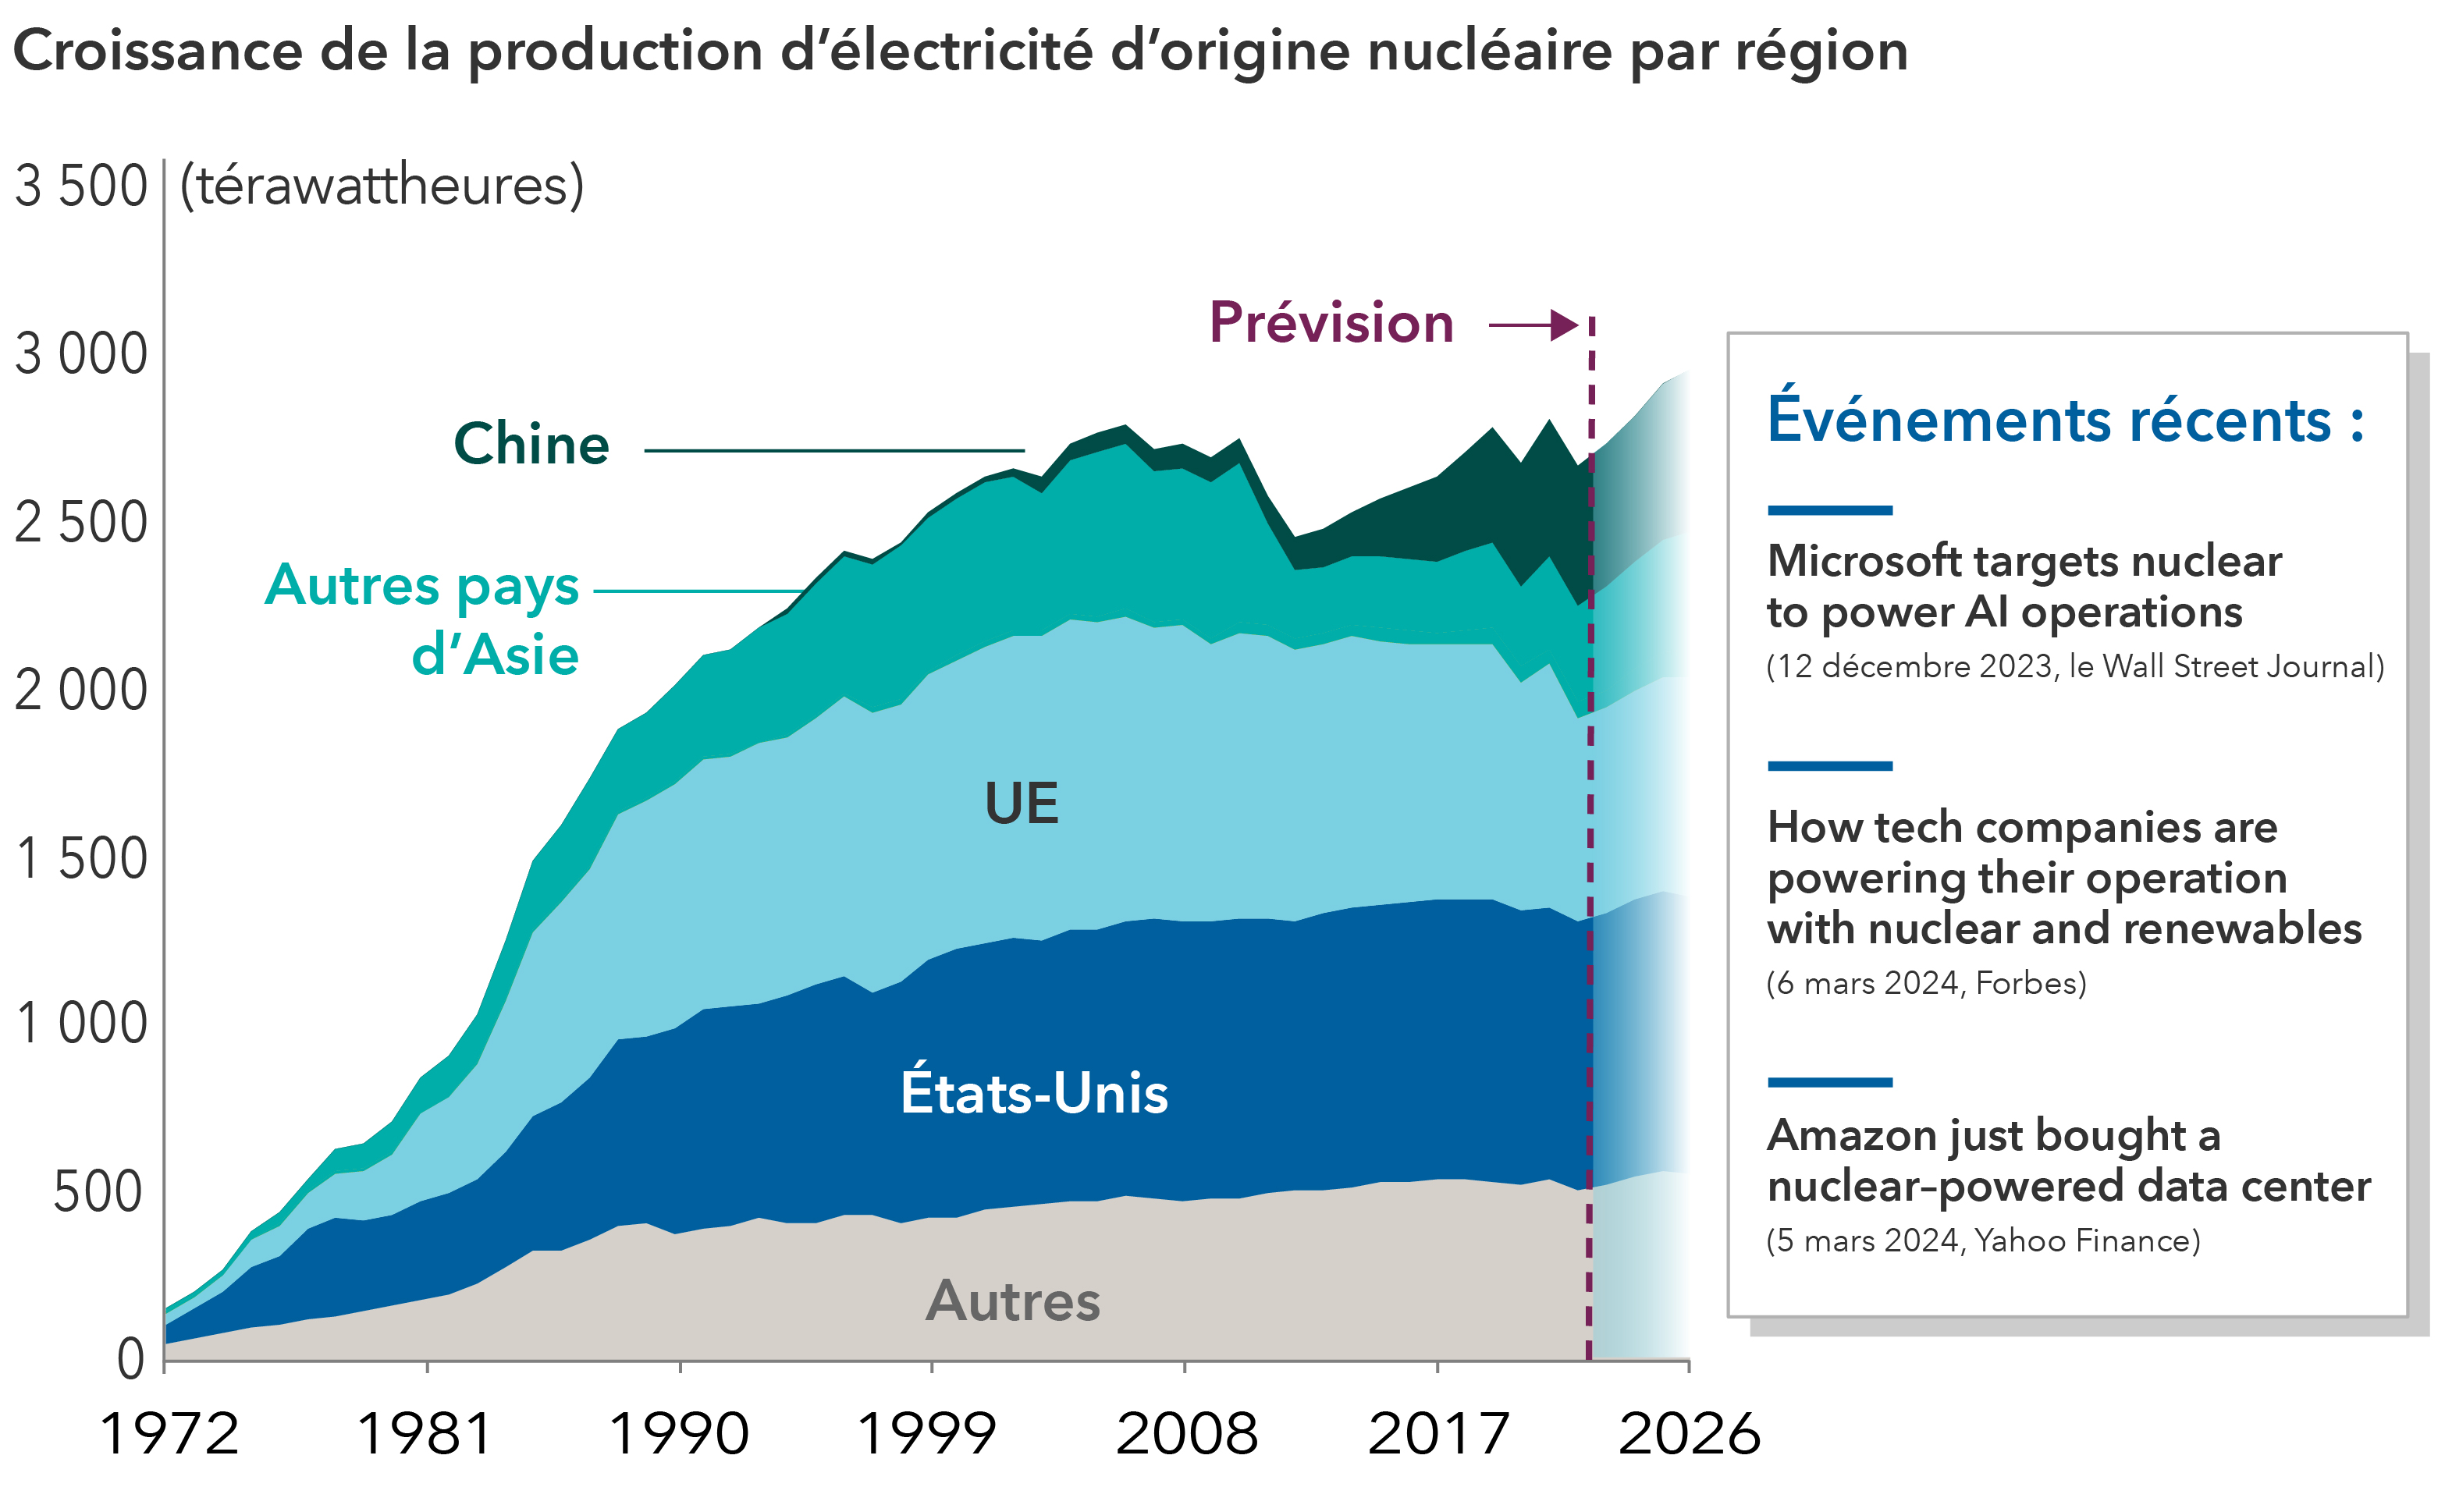 Le graphique en montagne, ci-dessus, présente la production d’énergie nucléaire de 1972 à 2023 en térawattheures et les projections de l’Agence internationale de l’énergie pour la période de 2024 à 2026. L’axe des abscisses présente les années, tandis que l’axe des ordonnées représente les térawattheures (TWh). Les régions représentées dans le graphique sont la Chine, d’autres pays d’Asie, l’Union européenne, les États-Unis et d’autres pays. Le graphique démontre que, de 1972 à 2017, la production d’énergie nucléaire a régulièrement augmenté dans l’Union européenne, aux États-Unis et dans les autres pays, tandis que la Chine et les autres pays d’Asie ont connu une baisse après 2008, avant de repartir à la hausse. Pour la période 2024 à 2026, il est prévu que la Chine ajoute le plus d’énergie nucléaire et que la production mondiale d’énergie nucléaire atteigne près de 3 000 TWh. Sur le côté droit de l’image, on trouve un encadré présentant trois gros titres sur des entreprises qui investissent dans l’énergie nucléaire pour leurs activités. Ces titres sont les suivants : « Microsoft targets nuclear to power AI operations », du Wall Street Journal le 12 décembre 2023. Le deuxième est « How tech companies are powering their operation with nuclear and renewables », extrait de Forbes le 6 mars 2024. Le dernier est « Amazon just bought a nuclear-powered data center », extrait de Yahoo Finance le 5 mars 2024. 